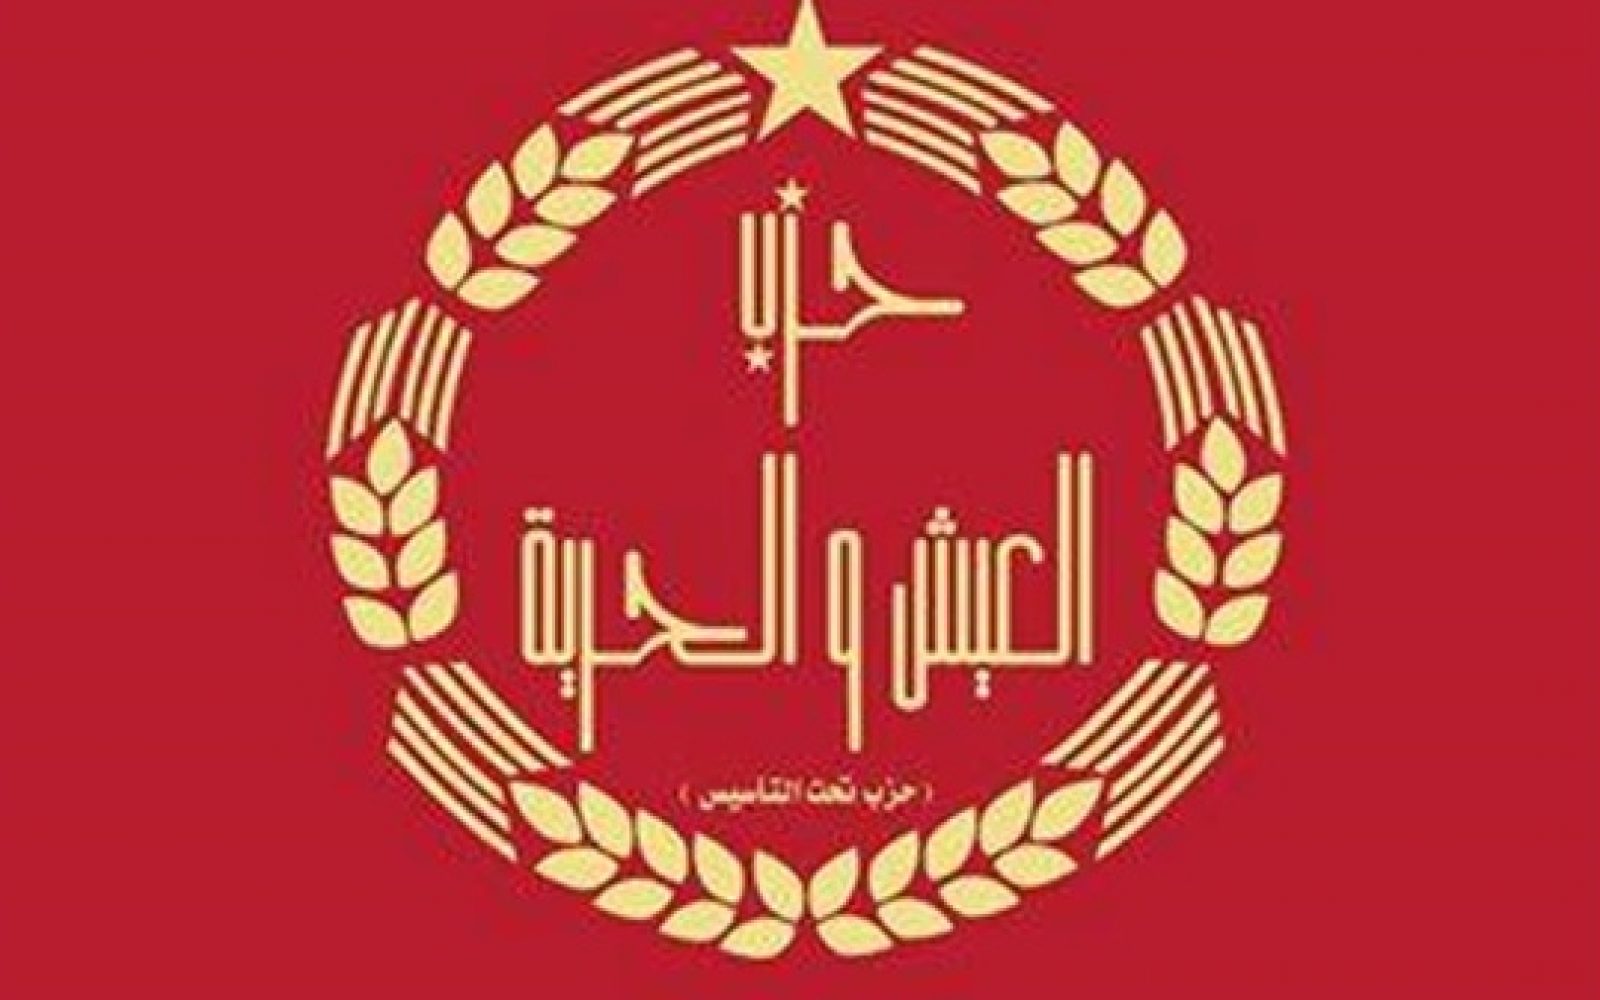 الادارية العليا تقضي بعدم قبول طعن يطالب بحظر نشاط حزب "العيش والحرية" 1